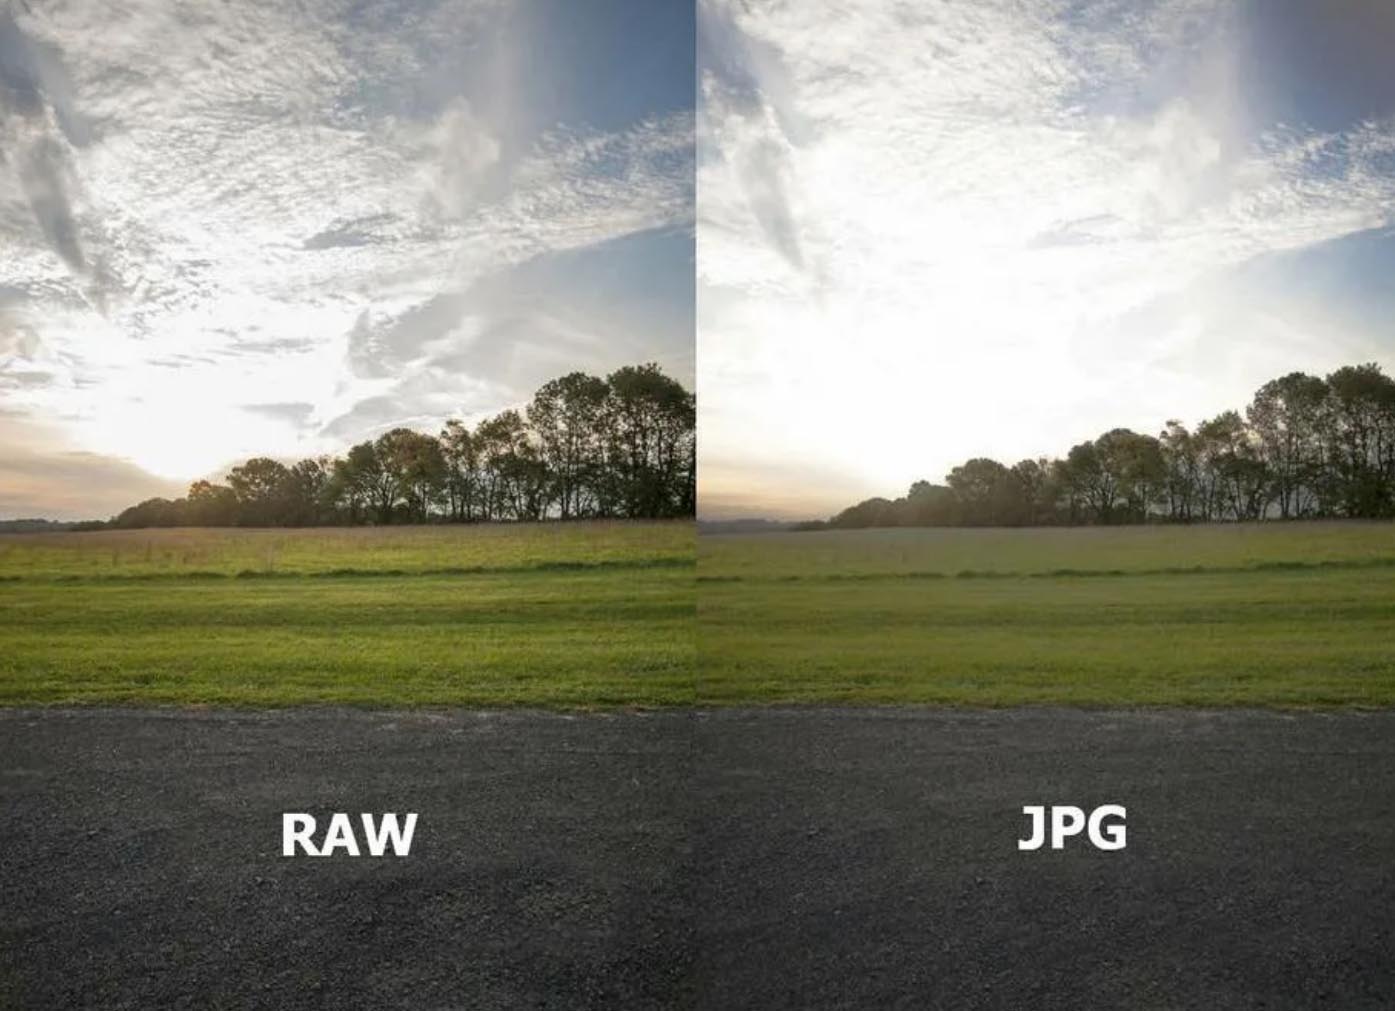 Формат 5 5 jpg. Raw Формат. Raw Формат изображения. Снимки в формате Raw. Raw jpeg разница.